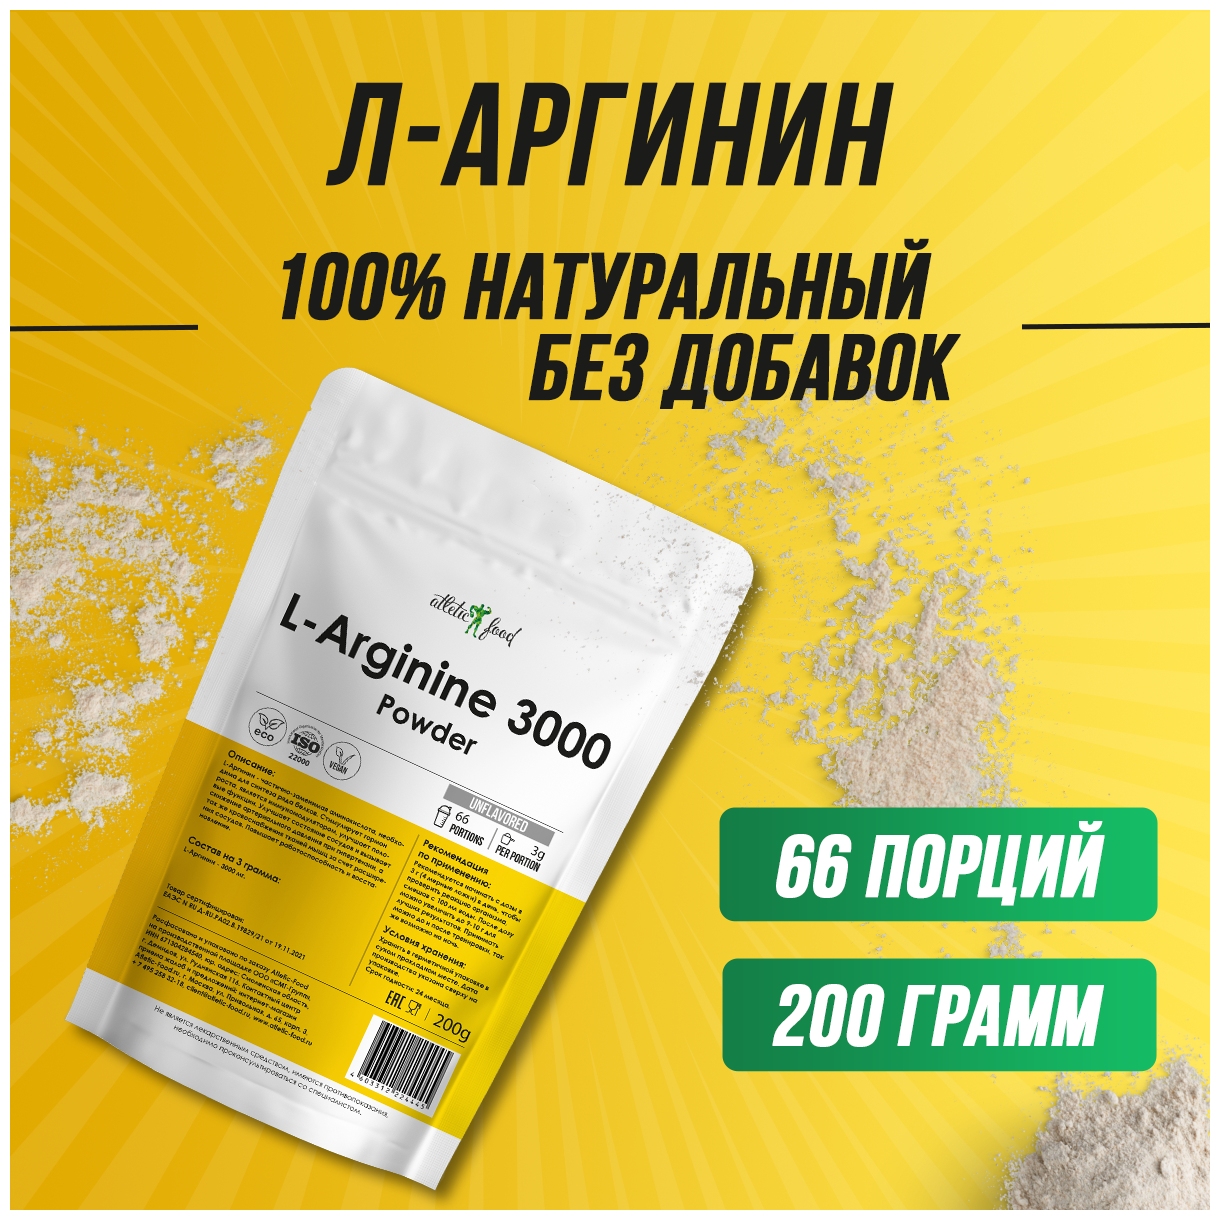 Л-Аргинин порошок 3000 мг донатор азота Atletic Food L-Arginine Powder 3000 порошок 200 грамм, натуральный, без добавок — купить в интернет-магазине по низкой цене на Яндекс Маркете